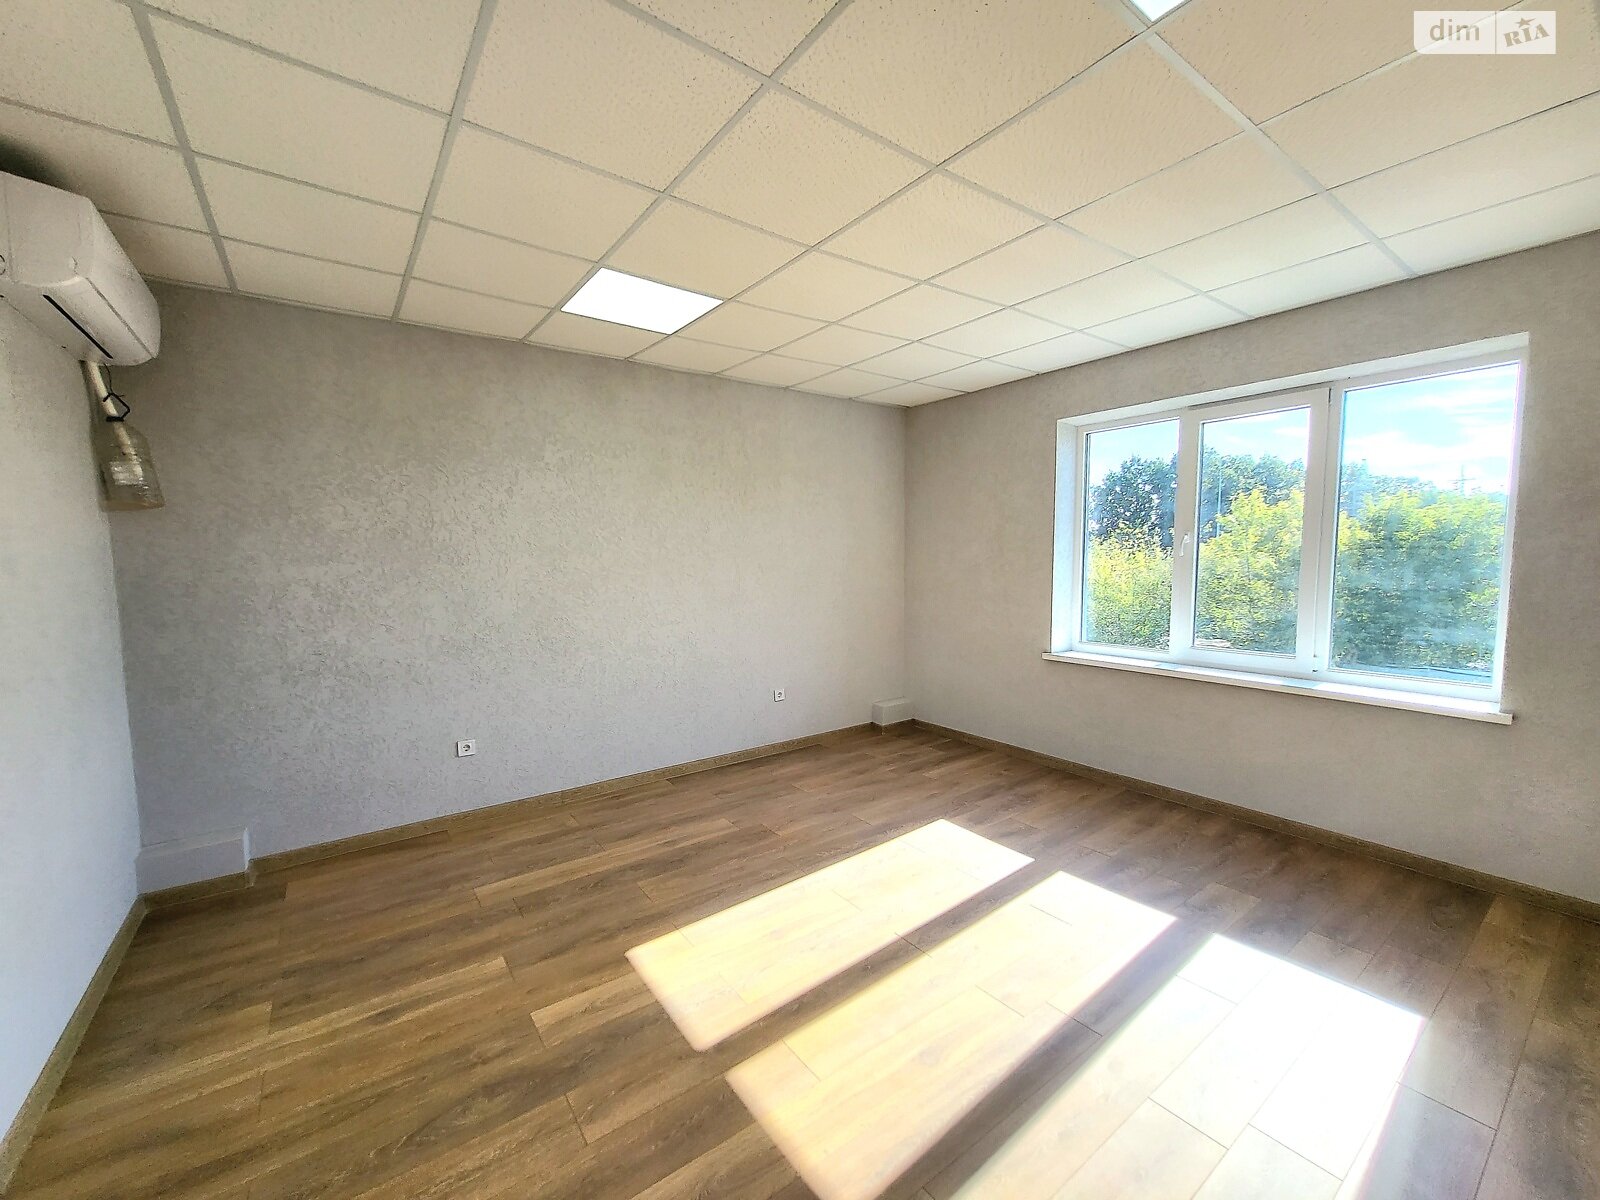 Аренда офисного помещения в Якушинцах, Хмельницьке шосе, помещений - 7, этаж - 2 фото 1